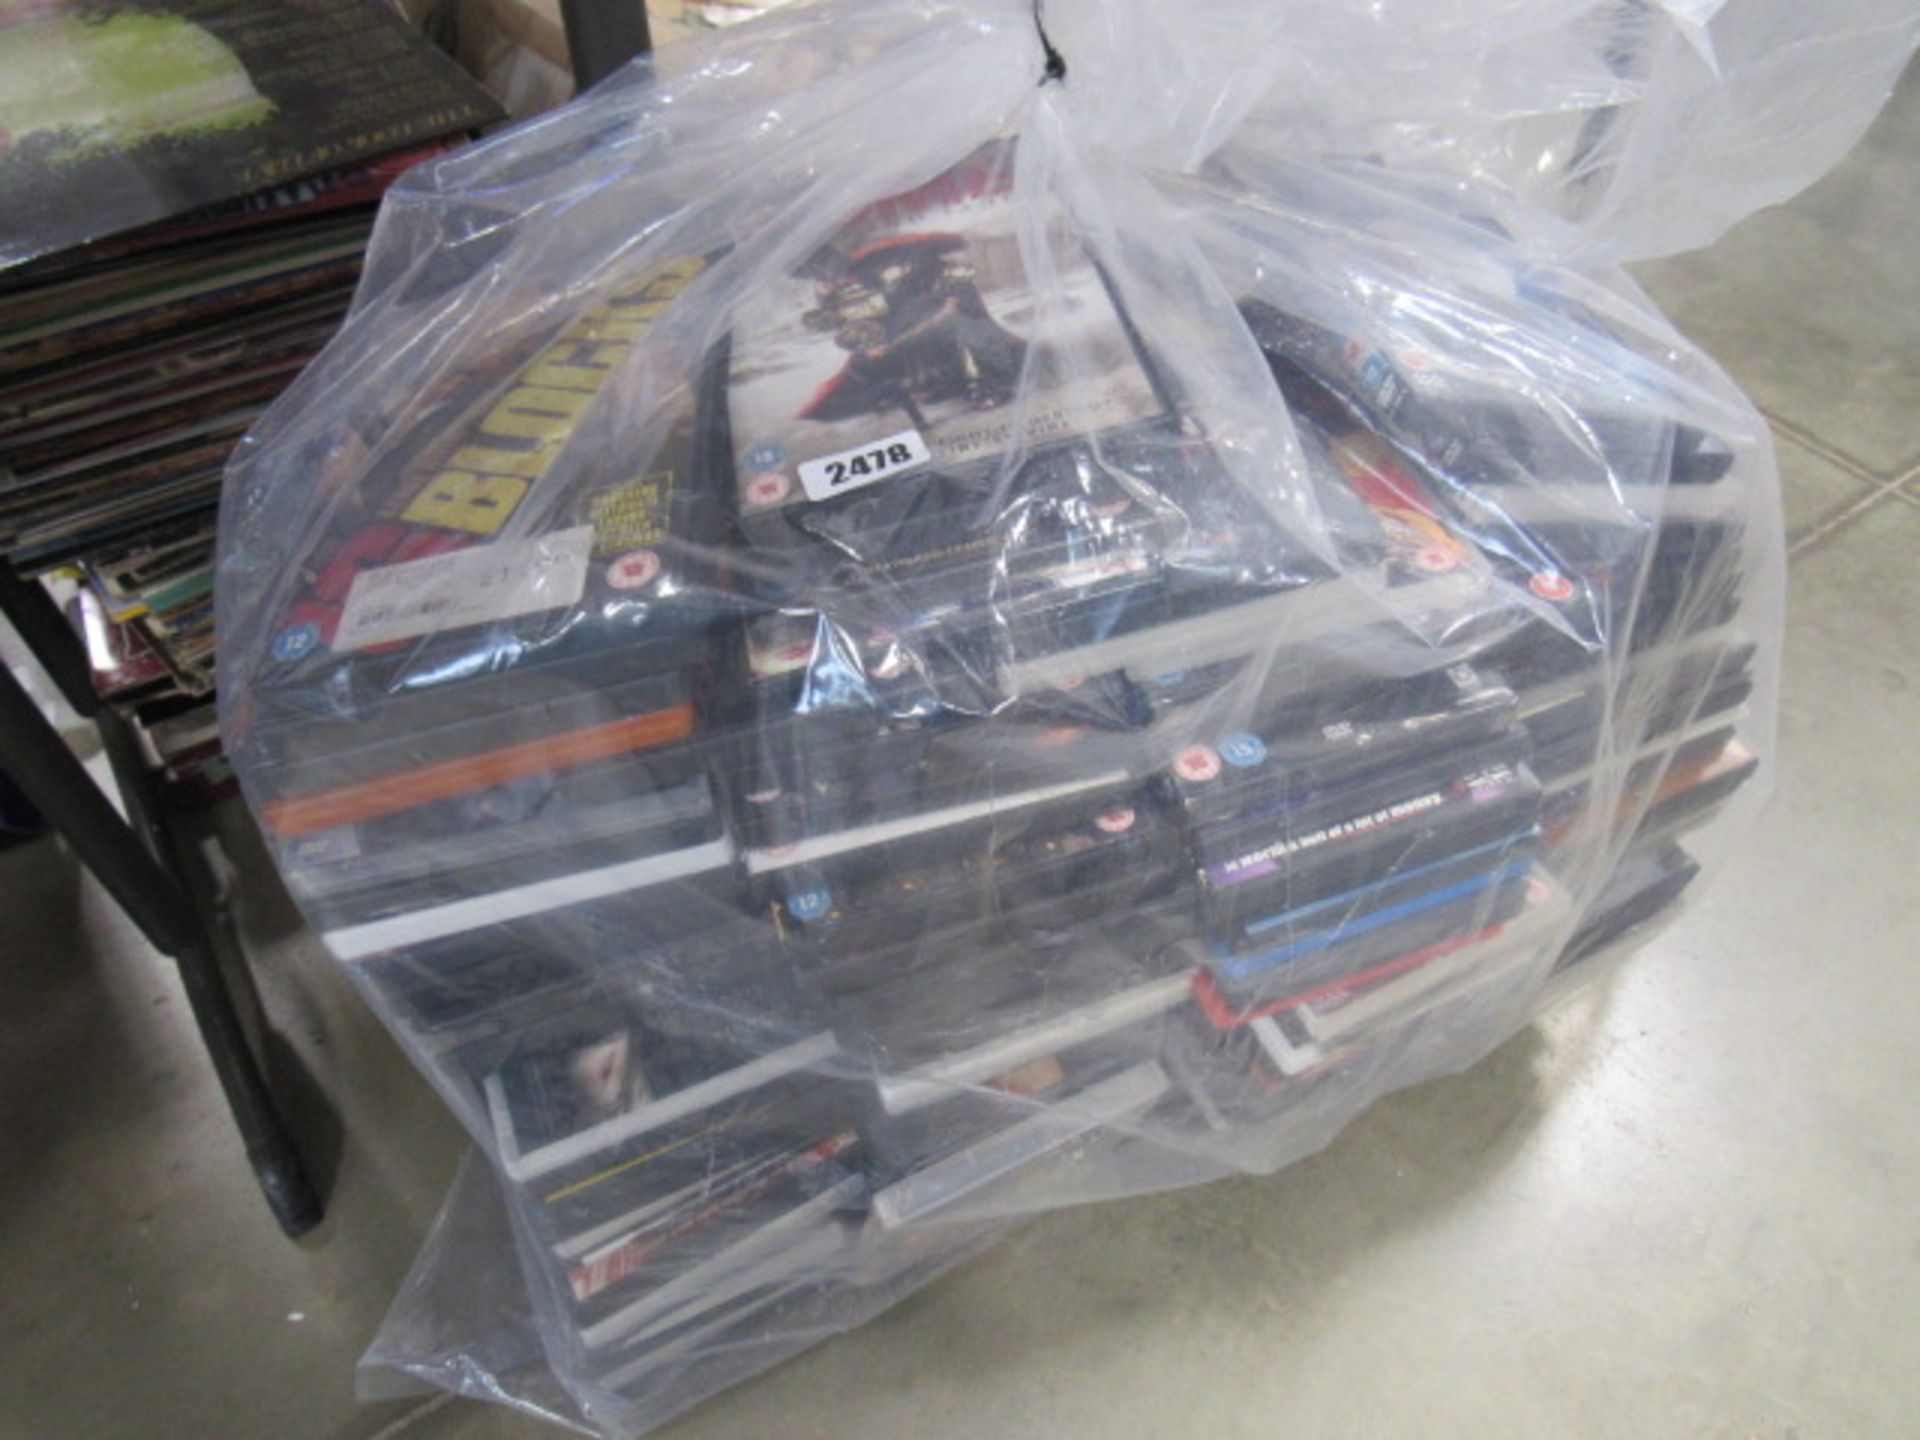 Large bag of DVD films